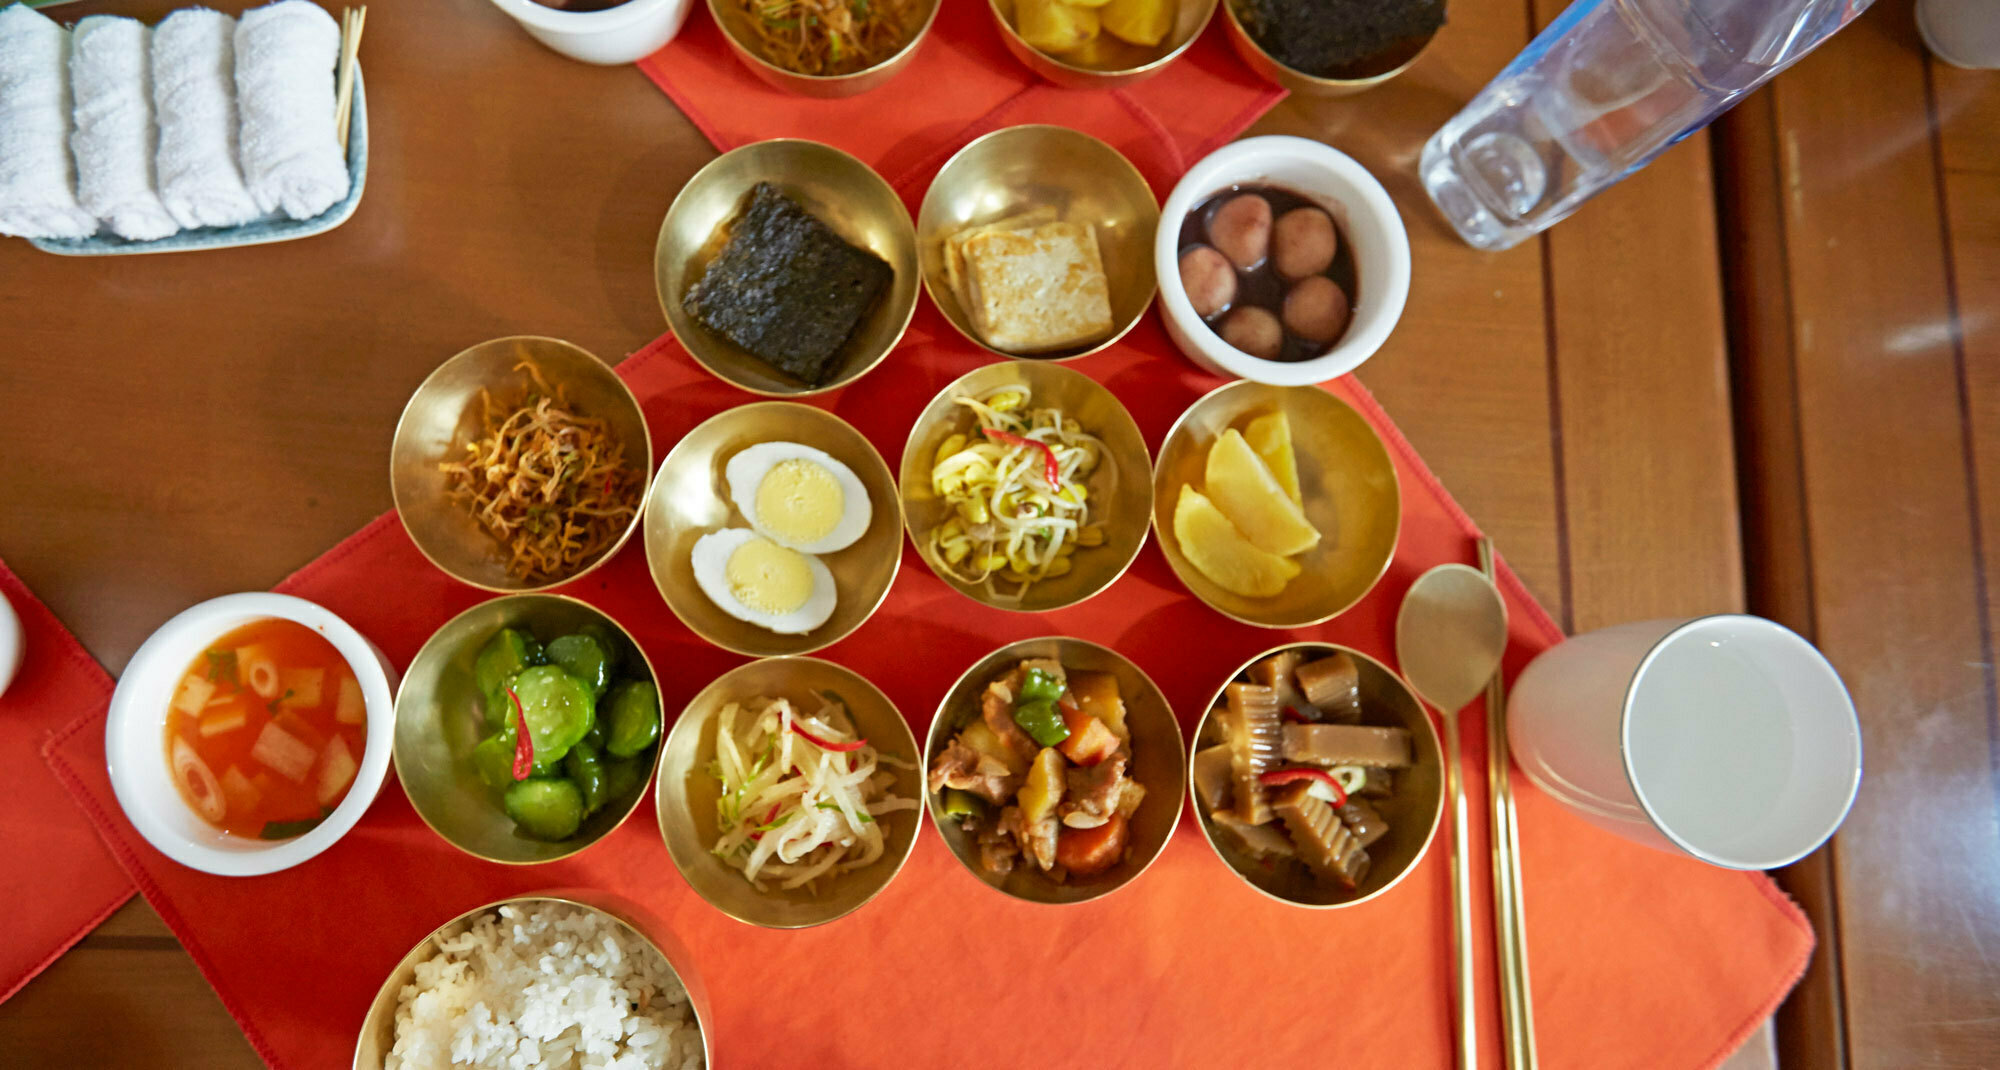 https://www.nknews.org/wp-content/uploads/2021/05/northkorea-food-diet-meal-dinner-banchan-sept-7-2015-nknews.jpg